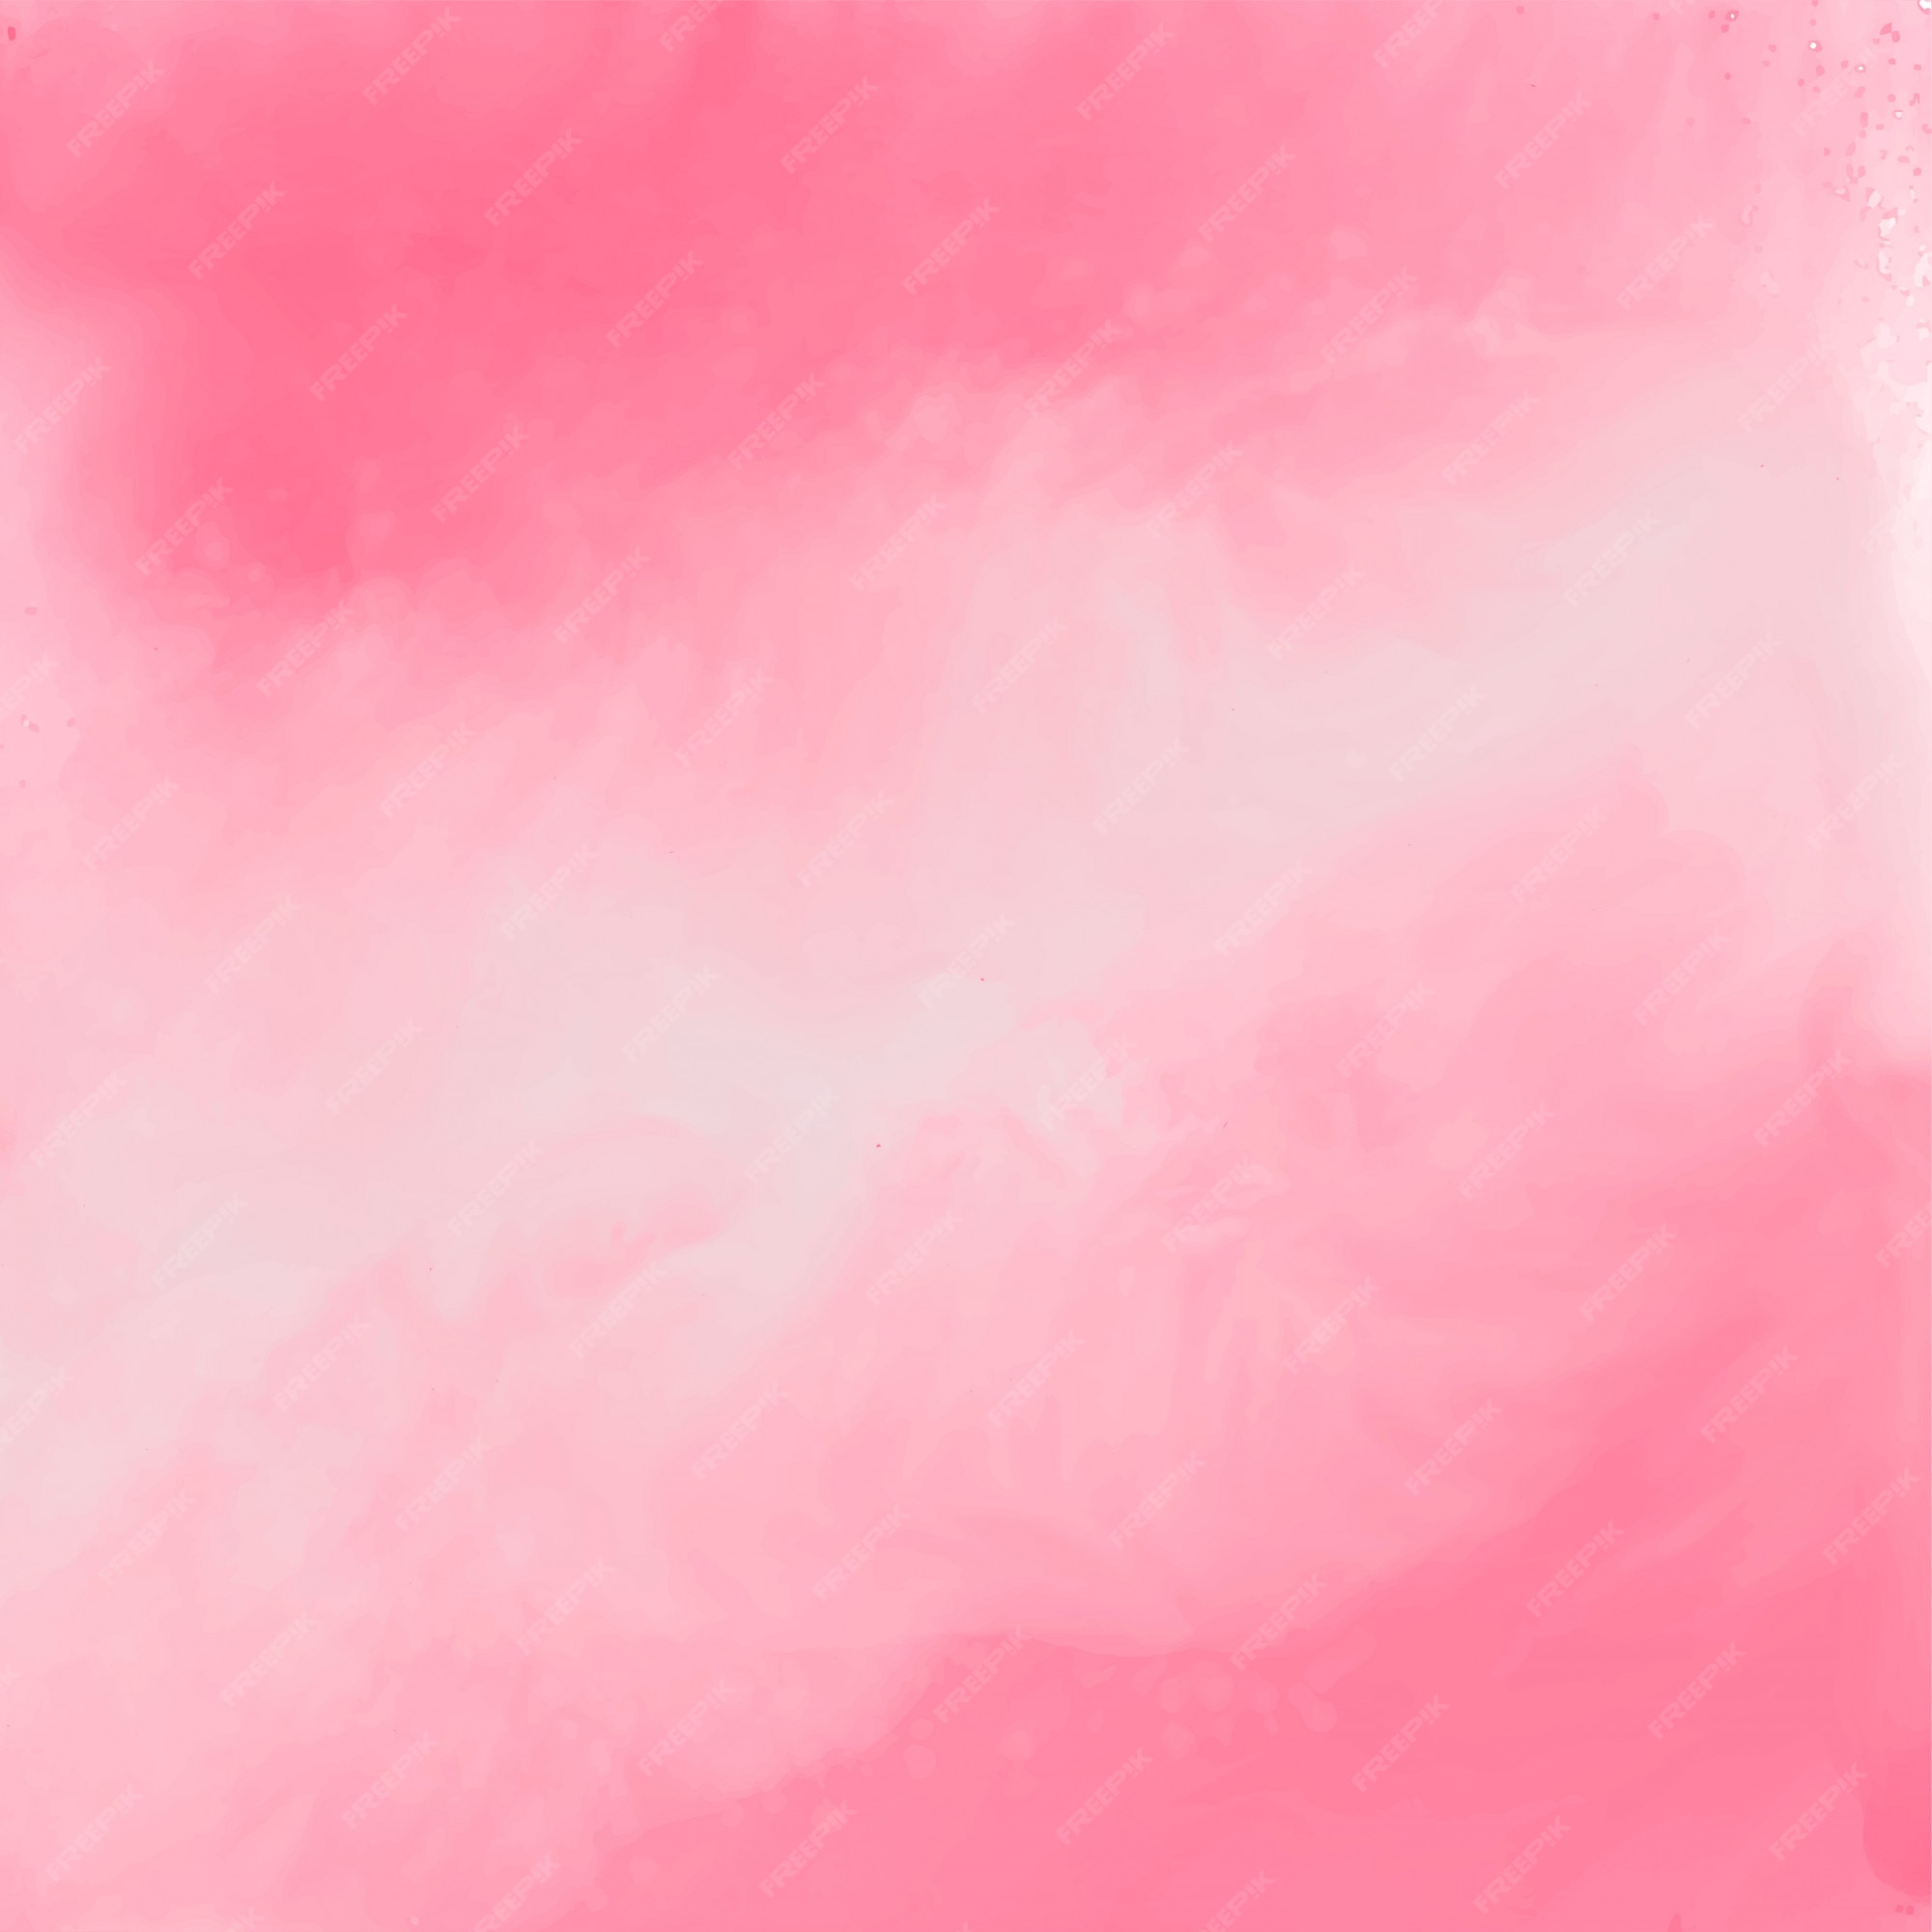 Với hình nền chất liệu nước màu hồng thanh lịch này, bạn sẽ được trải nghiệm một không gian làm việc hoàn toàn mới mẻ và đầy cảm hứng. Với đường nét trang trí đẹp mắt và phần chữ hiện đại, hình nền này sẽ giúp cho máy tính của bạn trở nên độc đáo và thu hút hơn bao giờ hết. Click để tải miễn phí hình nền này.